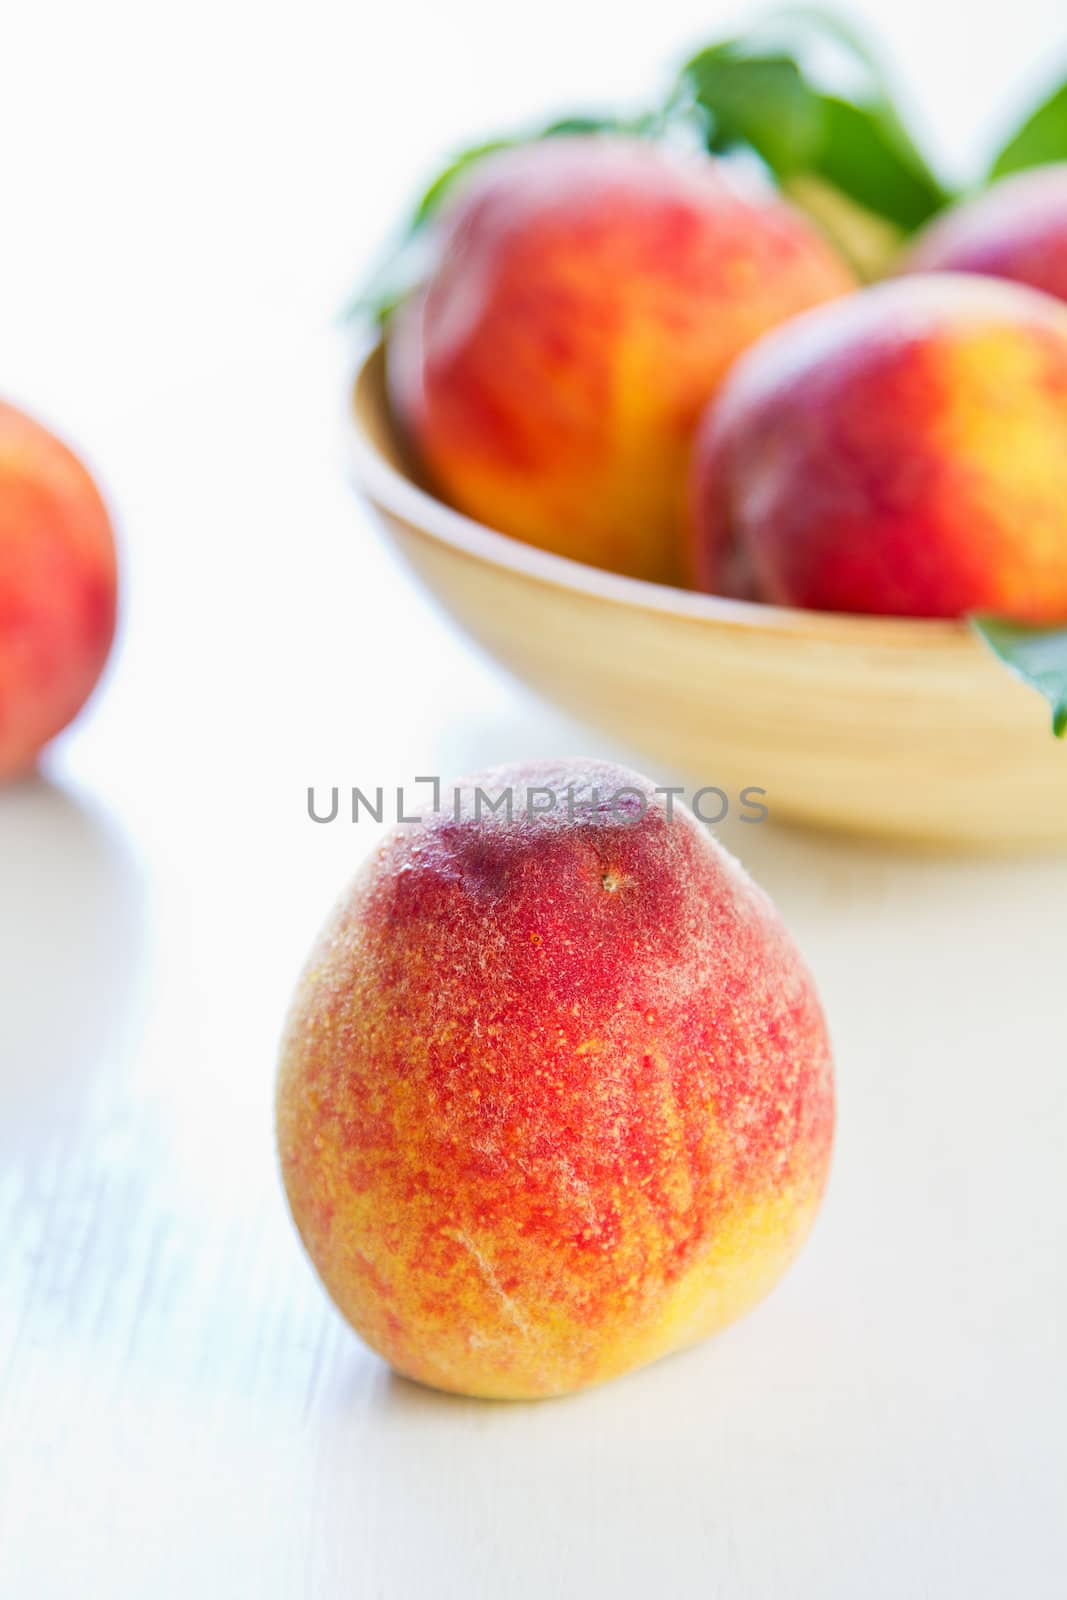 Fresh Peachs in a wood bowl